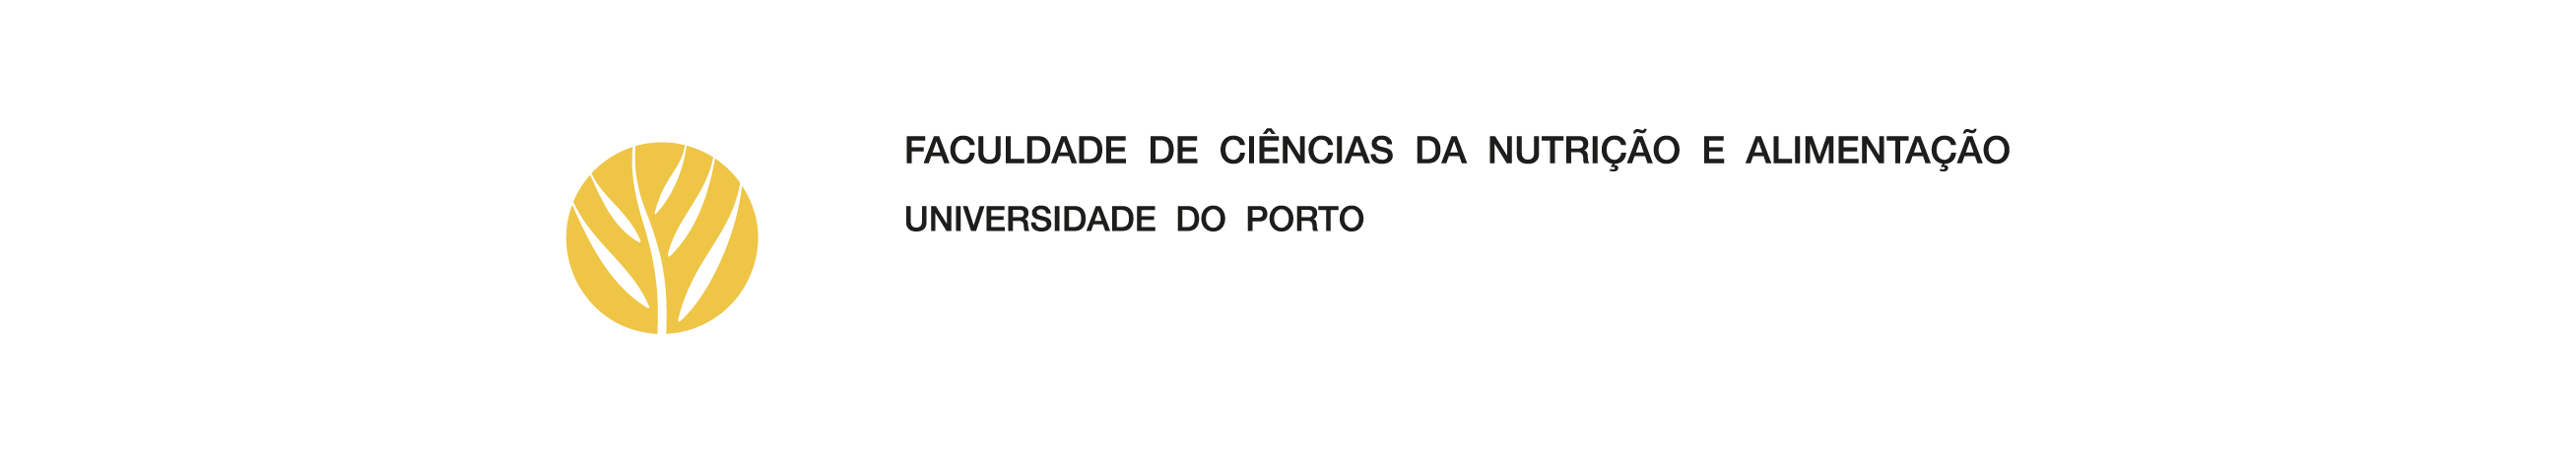 Logótipo - Faculdade de Ciências da Nutrição e Alimentação da Universidade do Porto (2006)